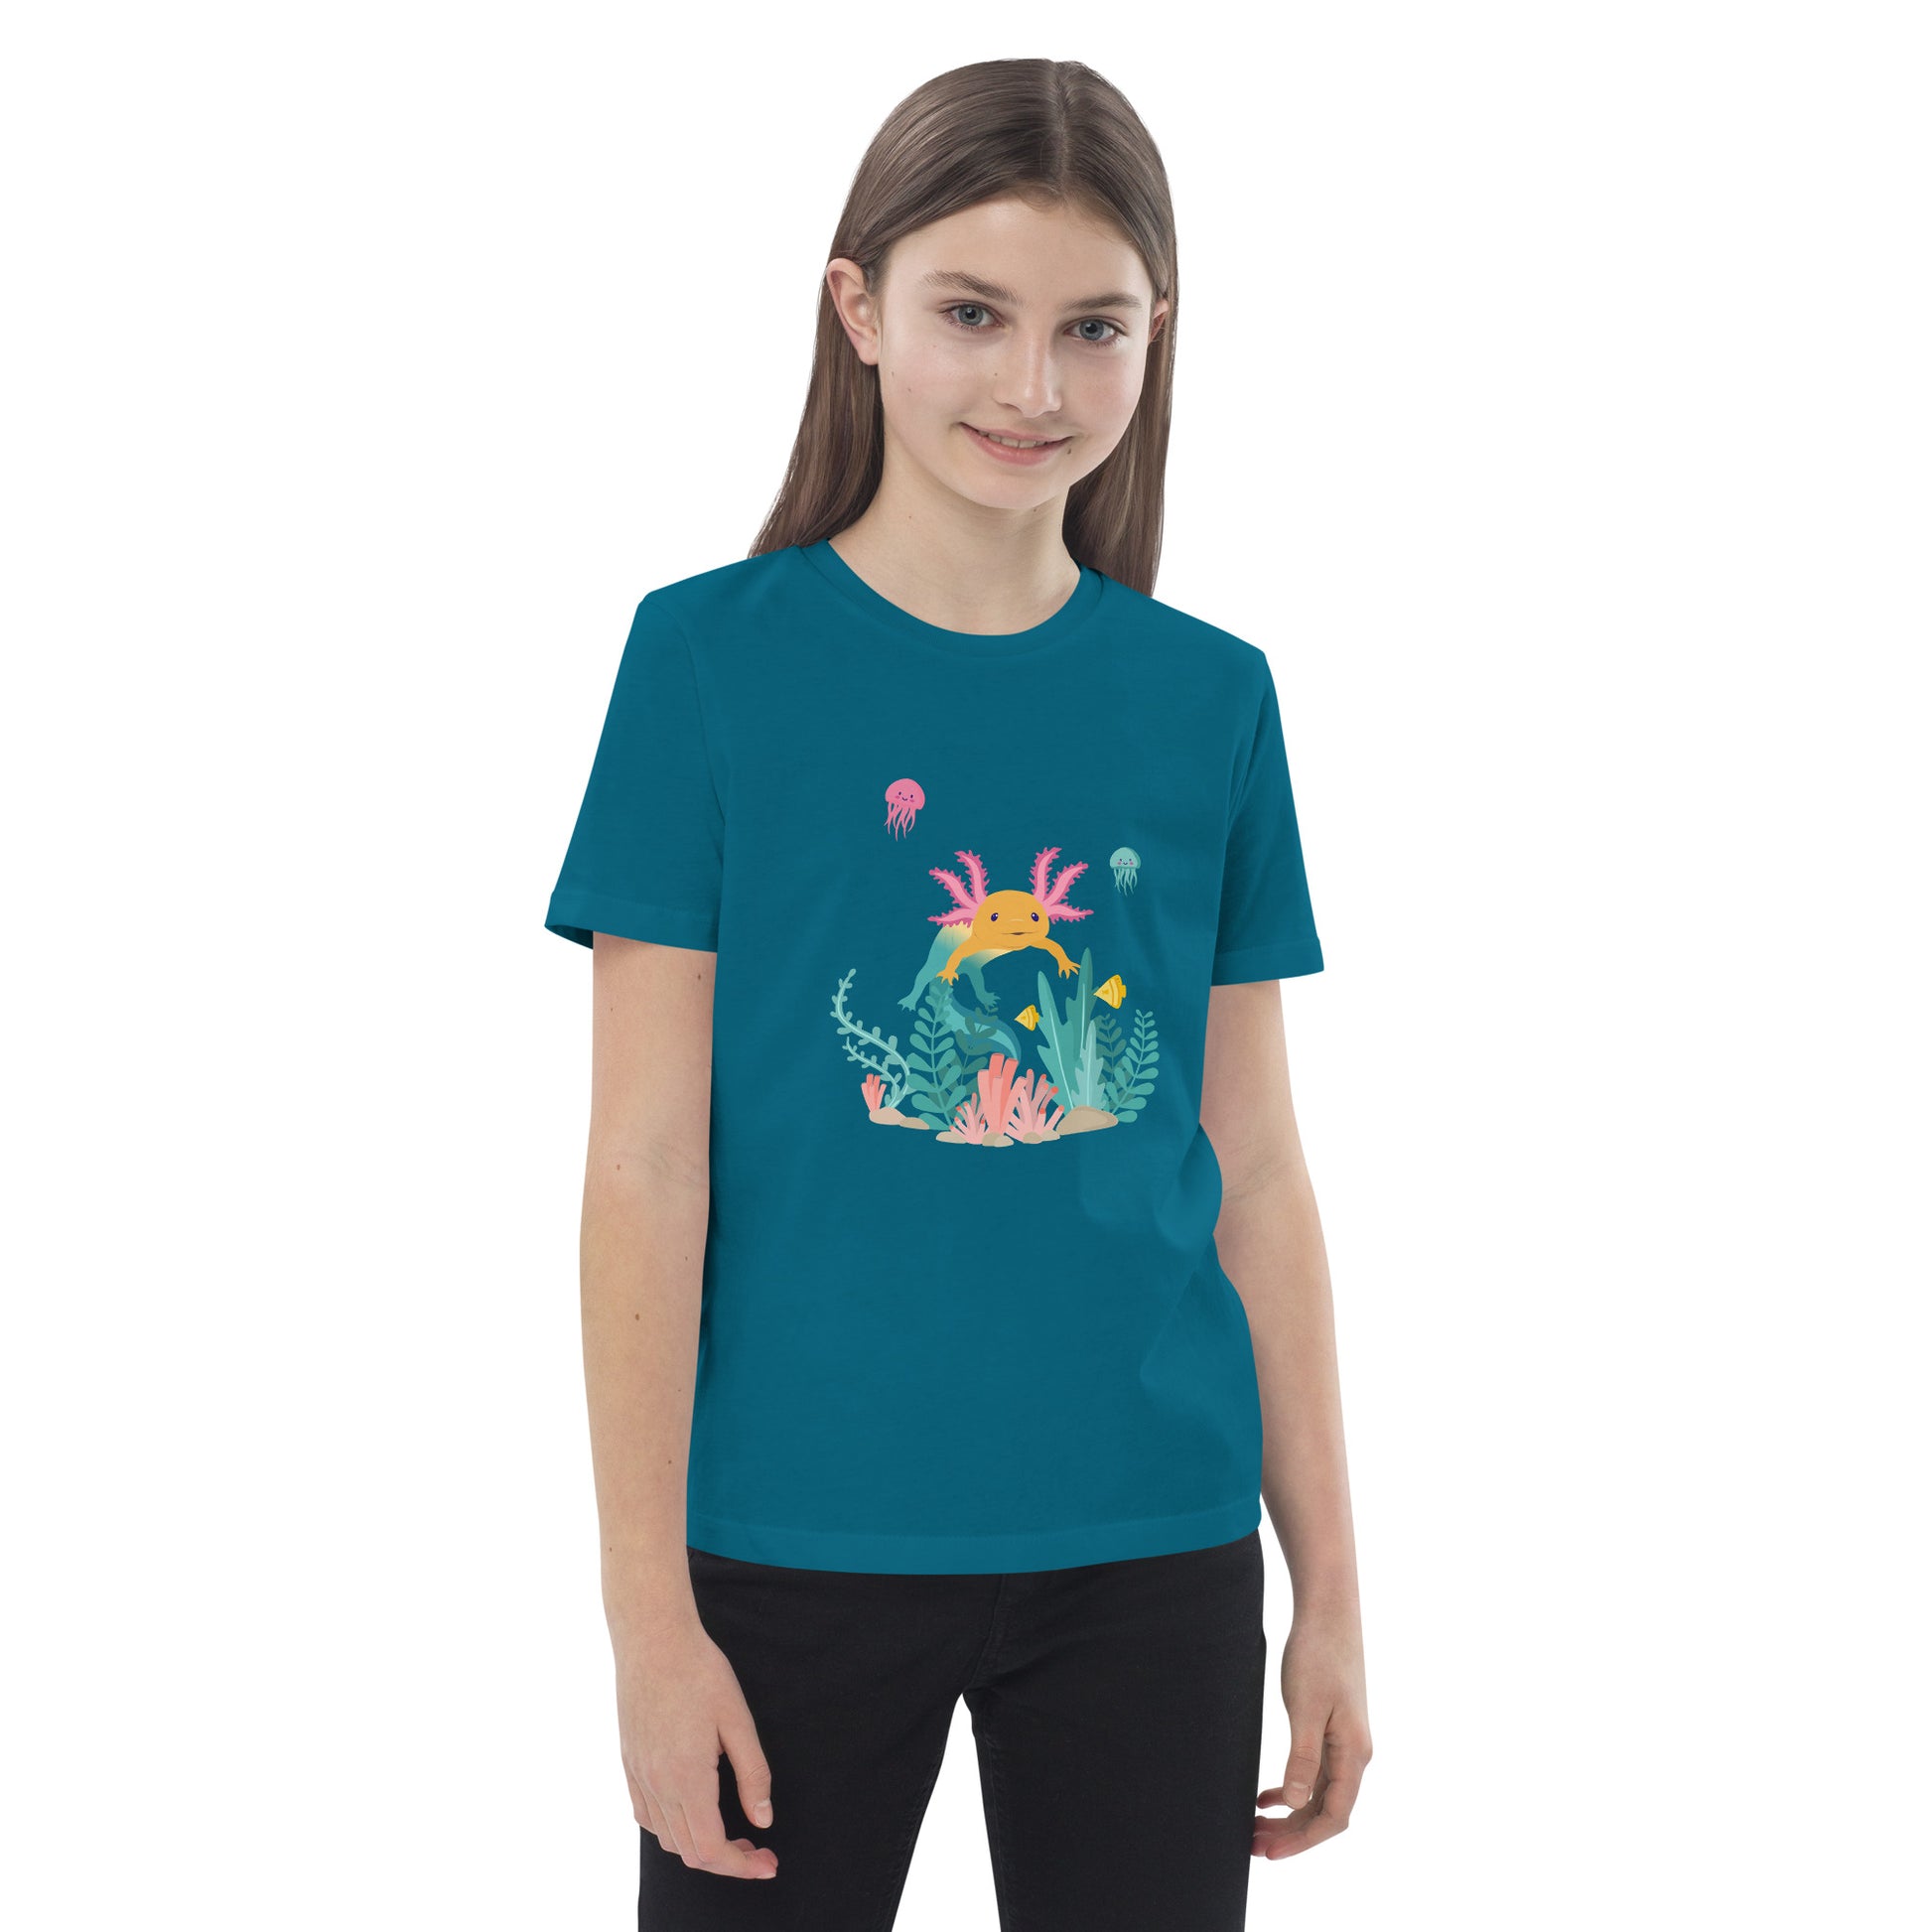 Barn T-shirt i färgen oceanblå. Ekologisk bomull och tryck med axolotlen Axis i bottenmiljö.